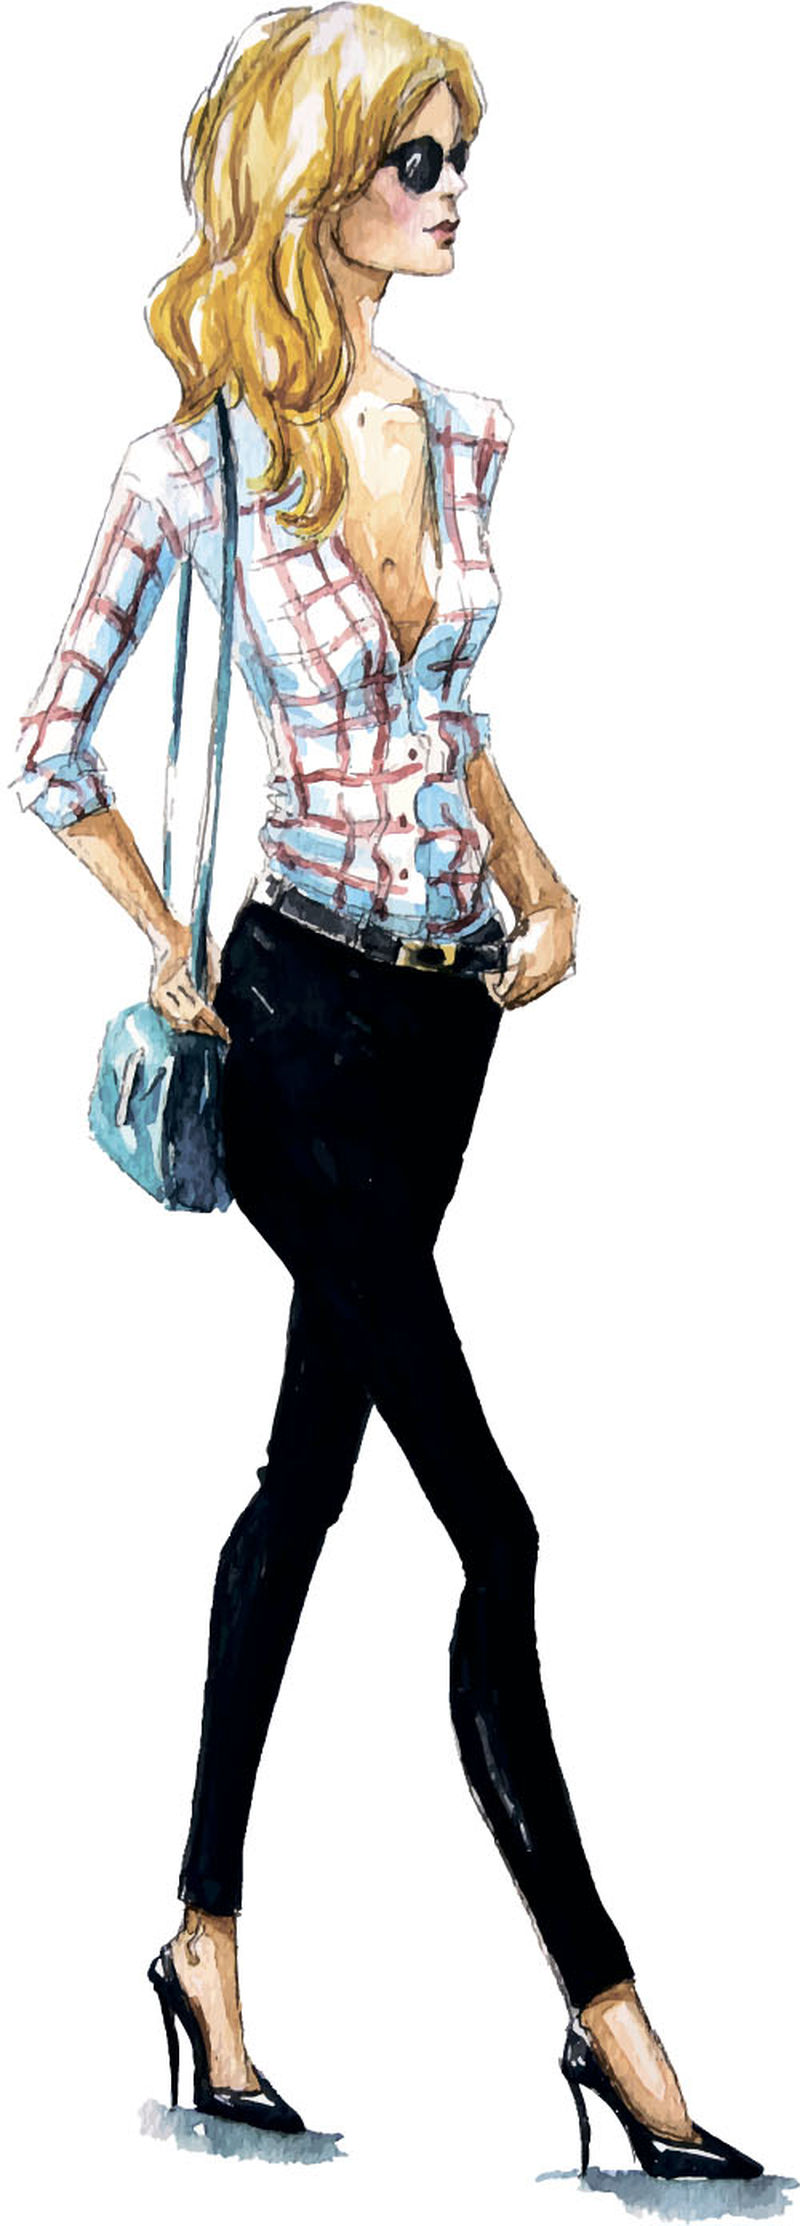 街头时尚-一个女孩走路的时尚插图-夏季造型-水彩画-手绘-矢量图